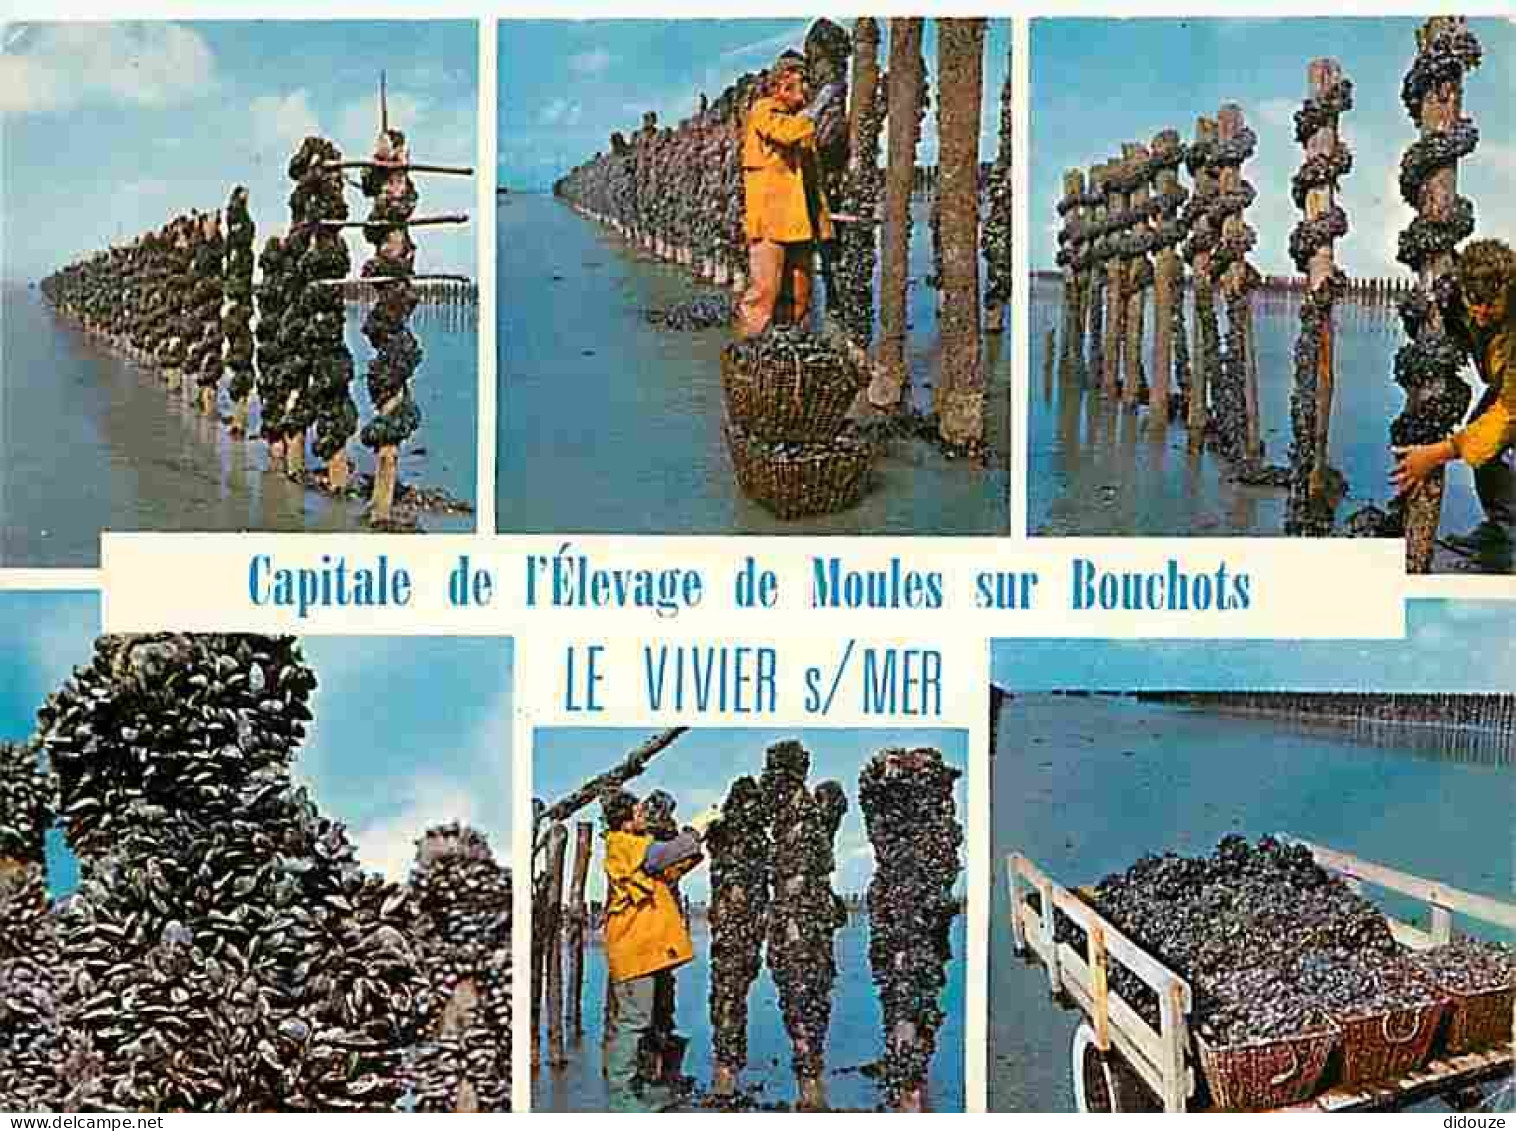 Metiers - Mytiliculture - Culture Des Moules - Mytilicultureur - Le Vivier Sur Mer - Capitale De L'èlevage Des Moules De - Fischerei